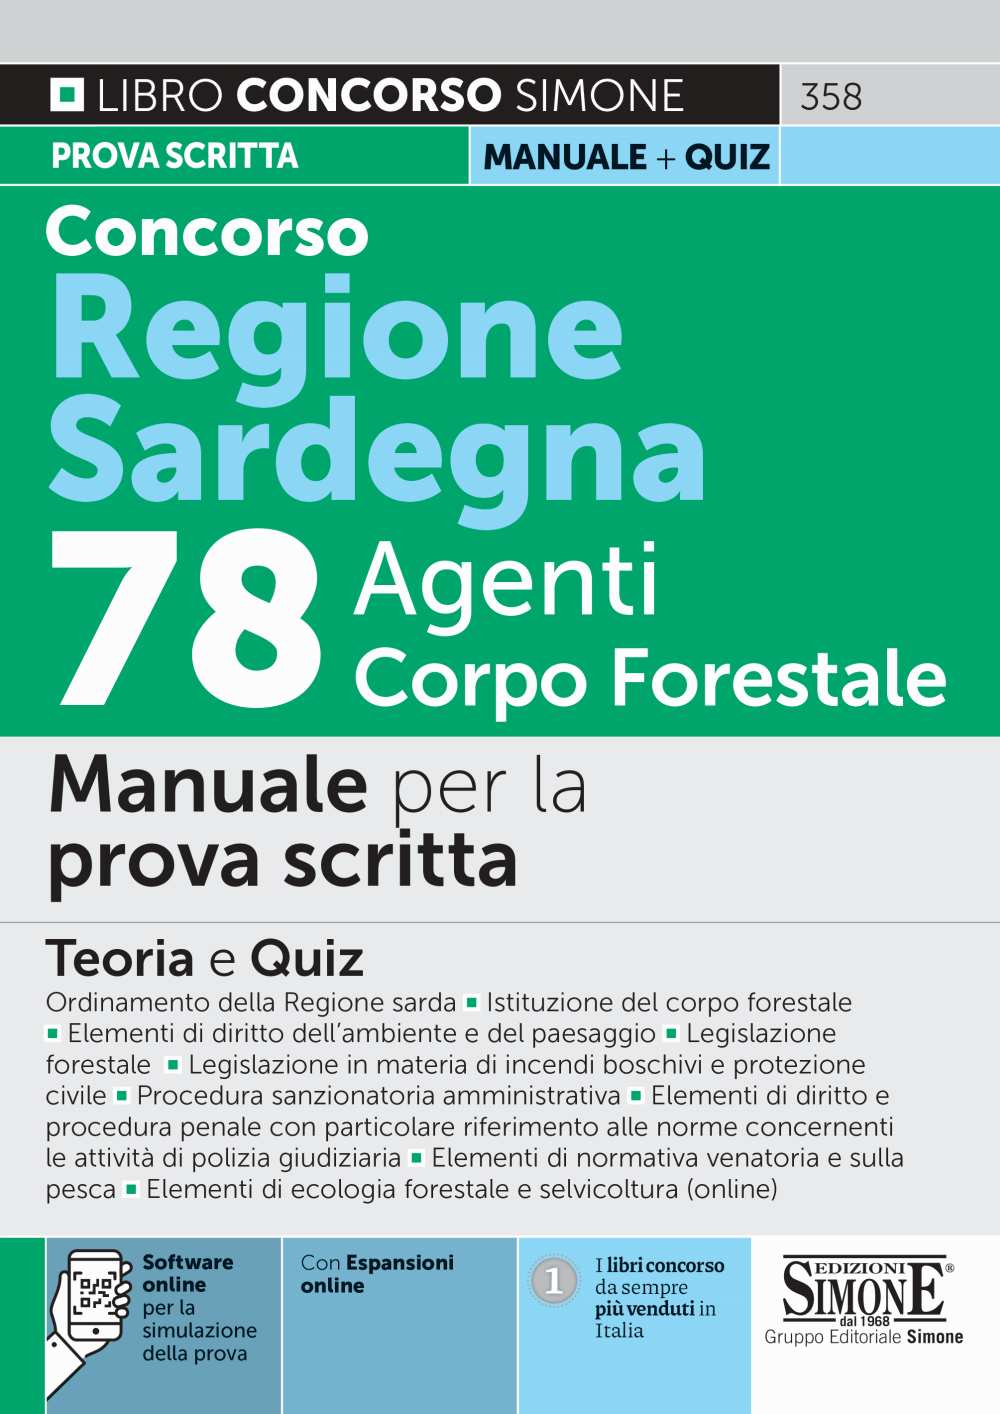 Concorso Regione Sardegna 78 Agenti Corpo Forestale - Manuale per la prova scritta